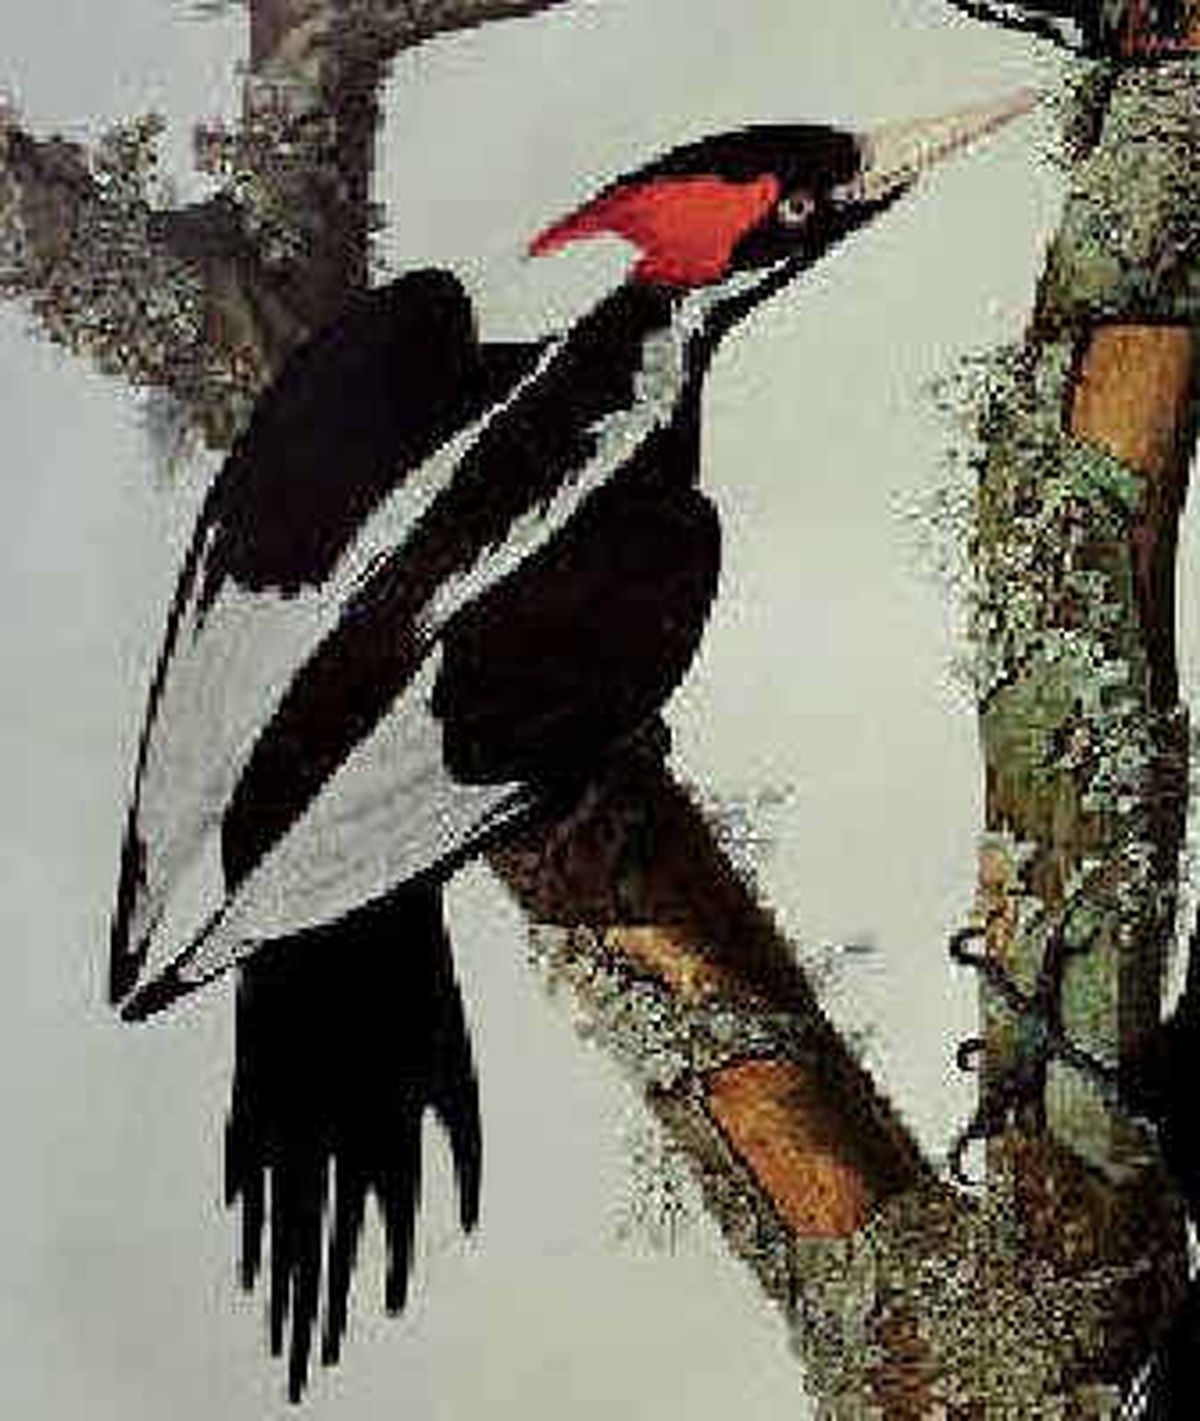 Ivory Billed Woodpecker Bird Birds Watching Portrait Art Poster 10 x 13.5 inches 